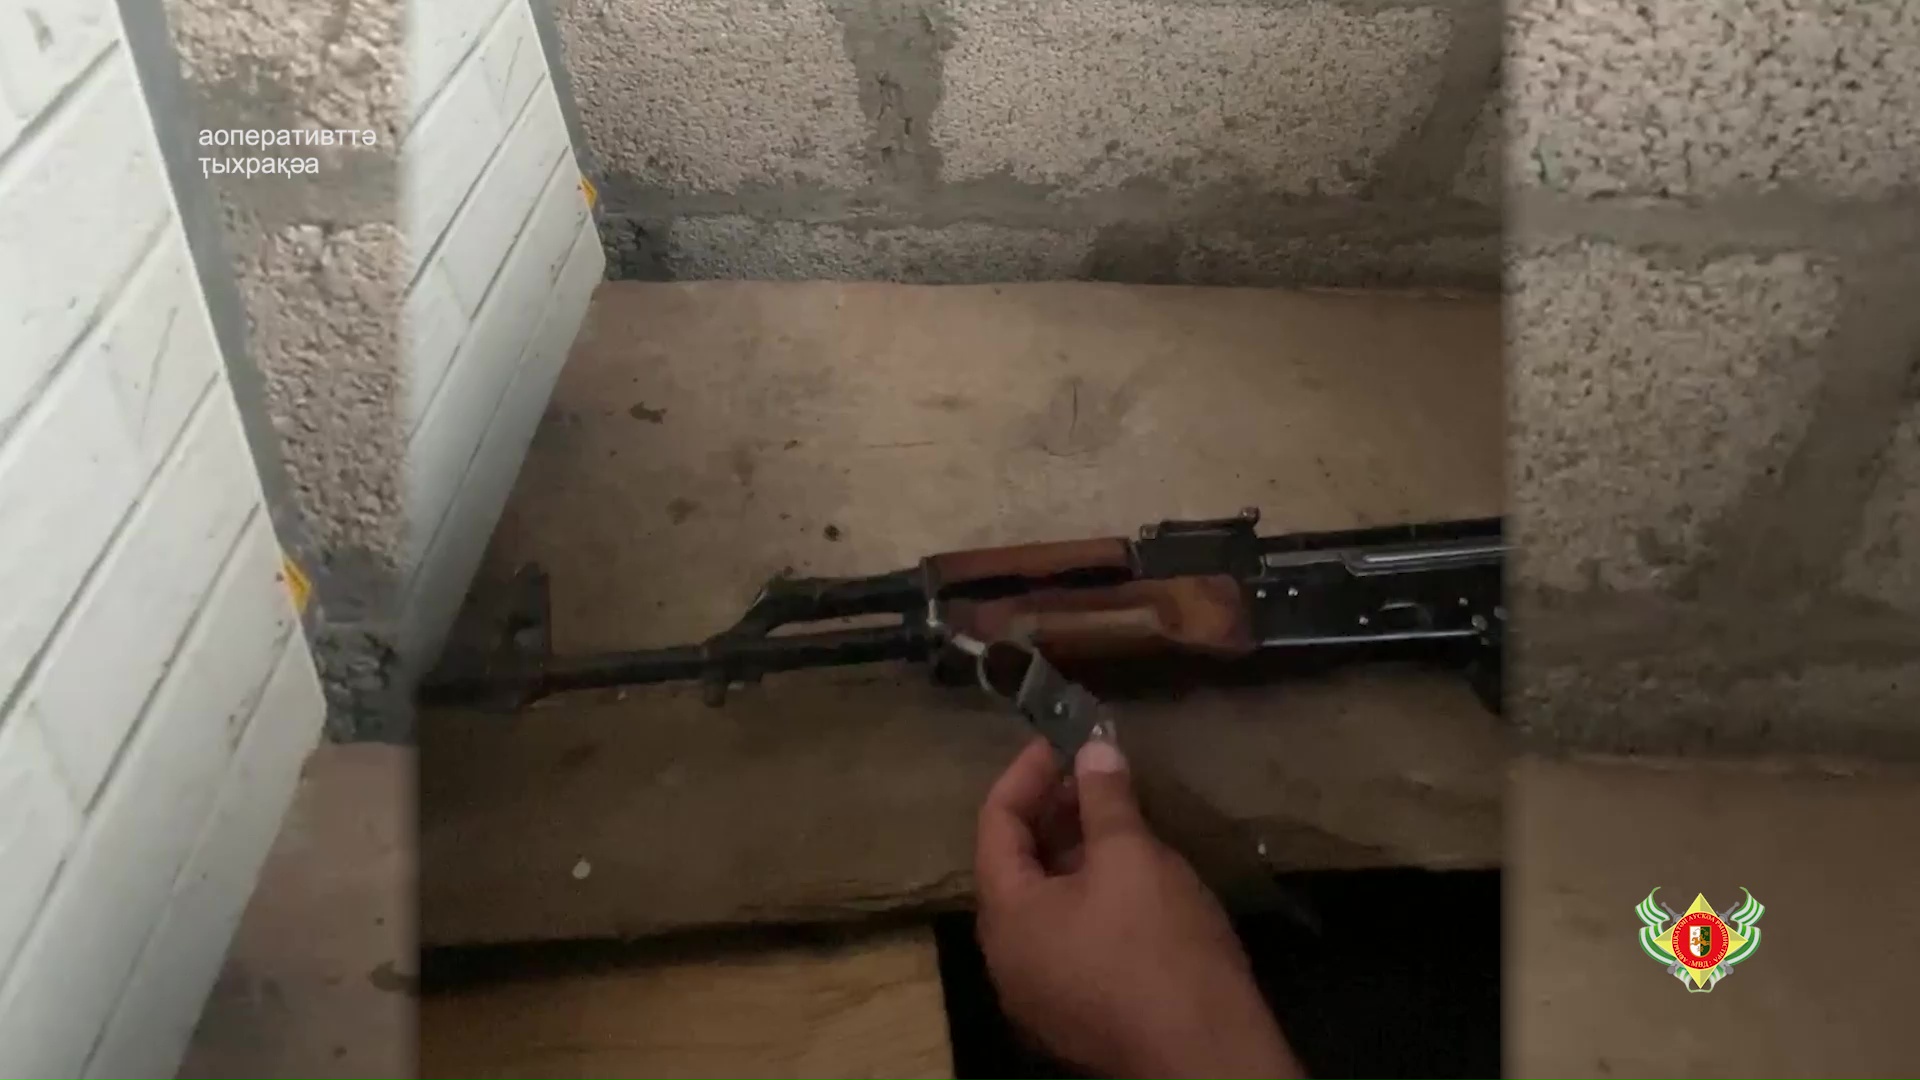 Незаконное хранение огнестрельного оружия и боеприпасов вменяется  жителю поселка Бзыпта.